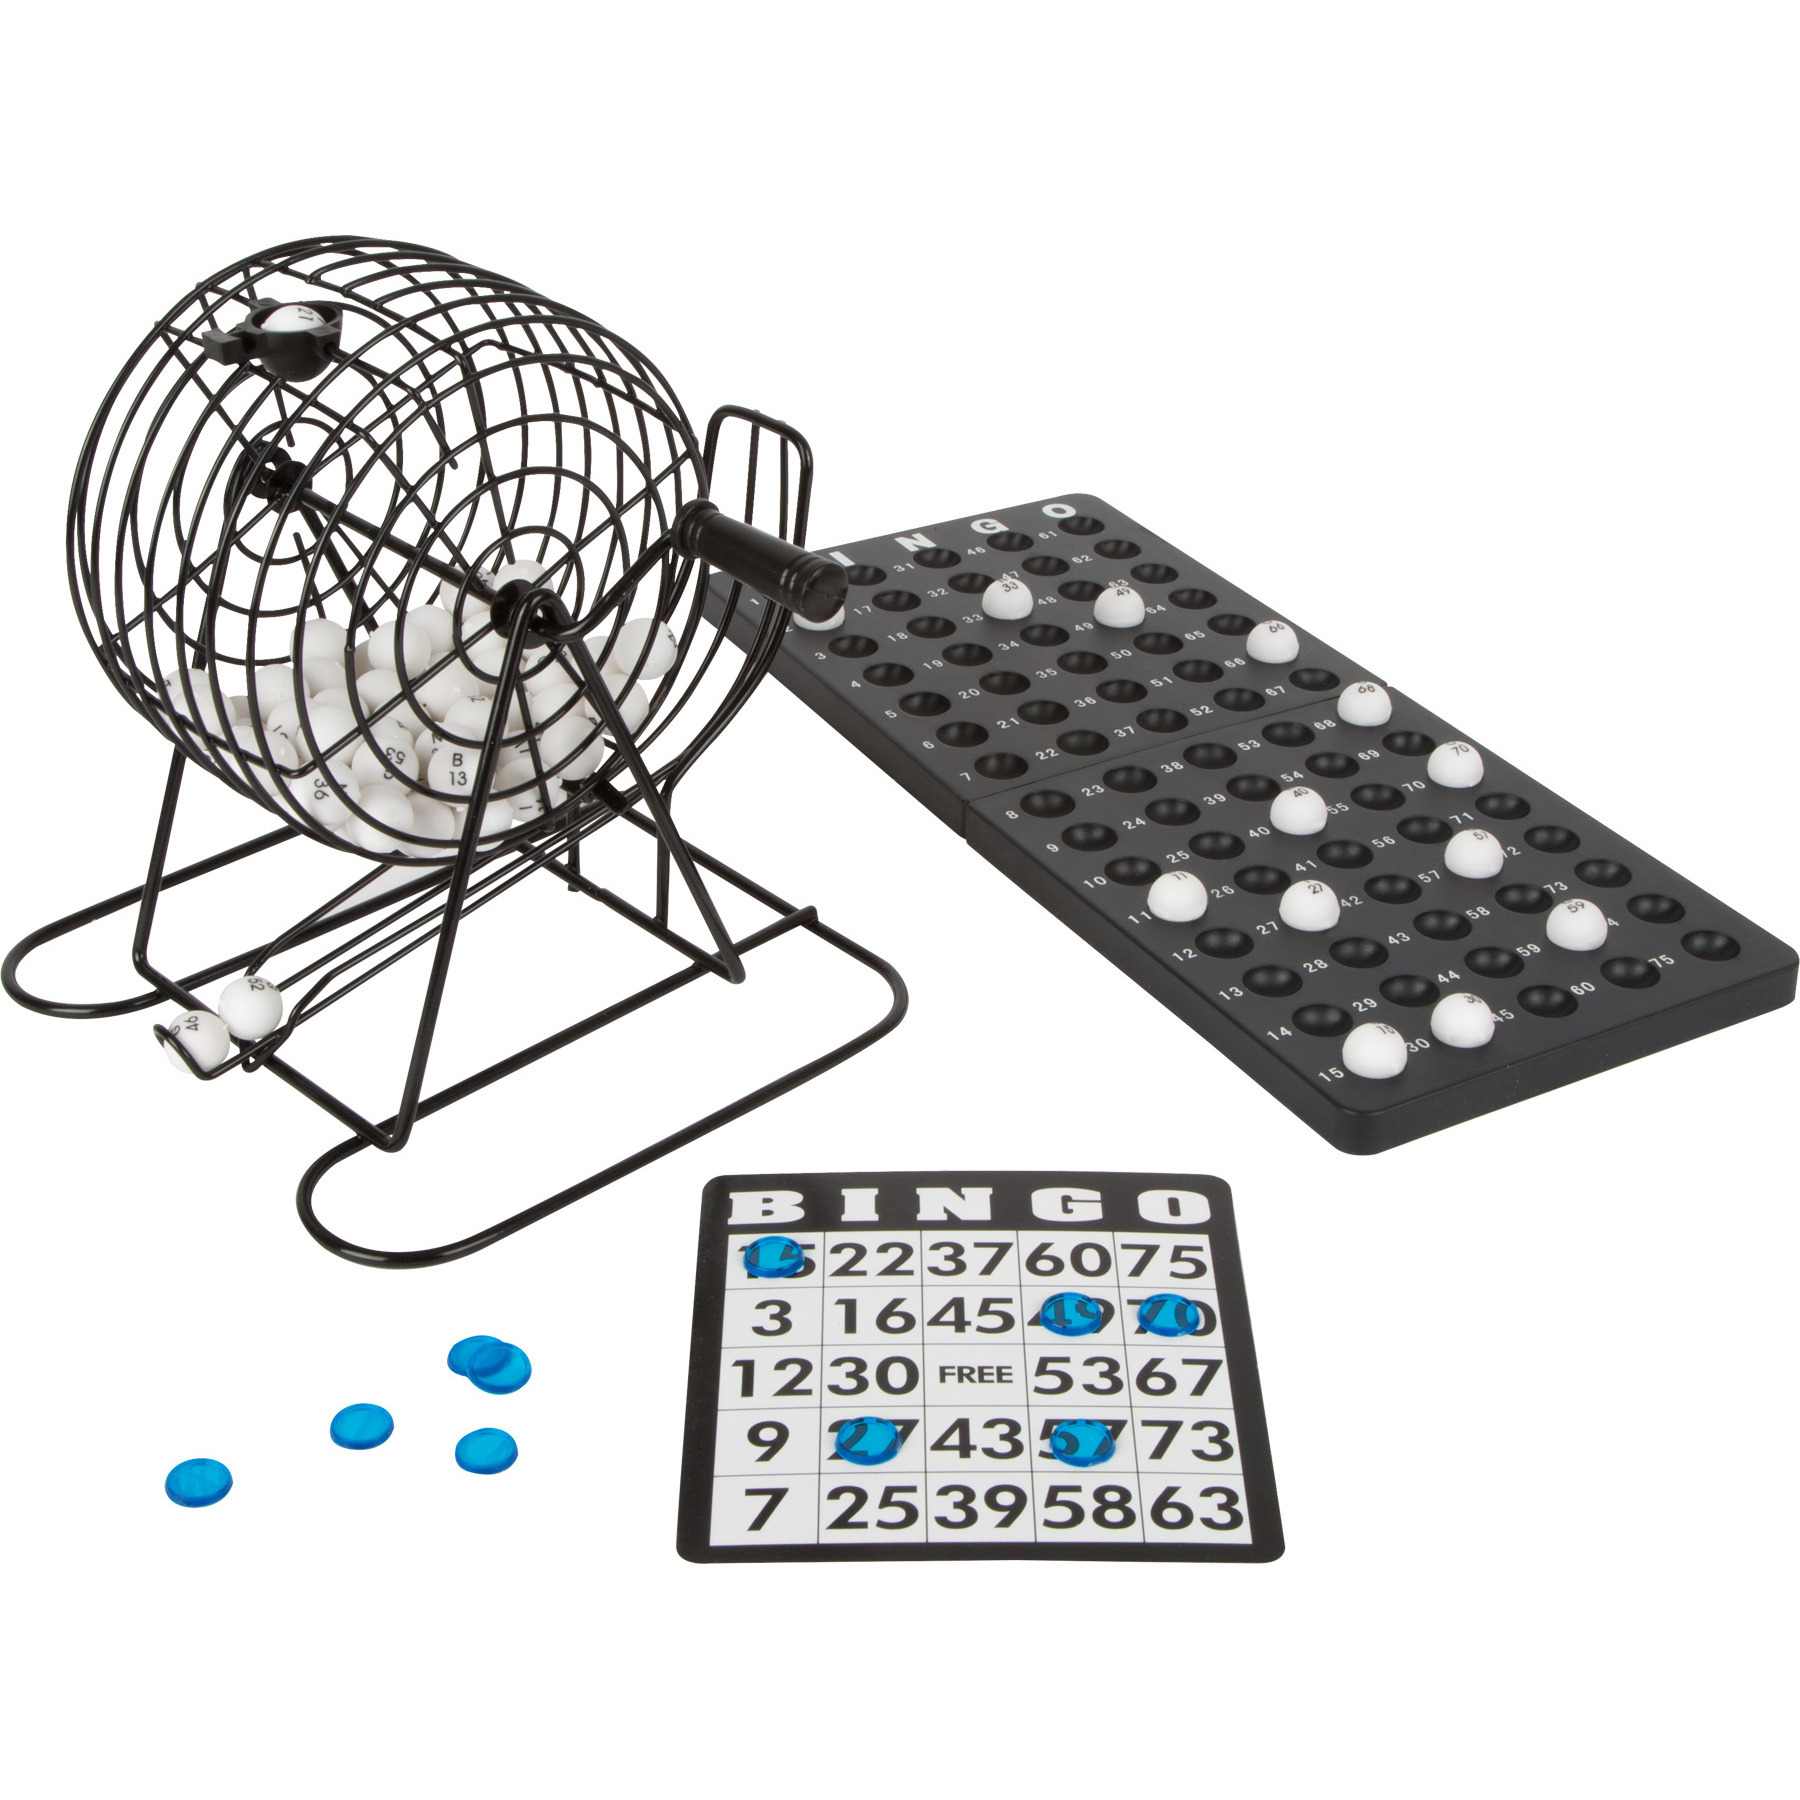 Bingo spel zwart/wit complete set 20 cm nummers 1-75 met molen en bingokaarten